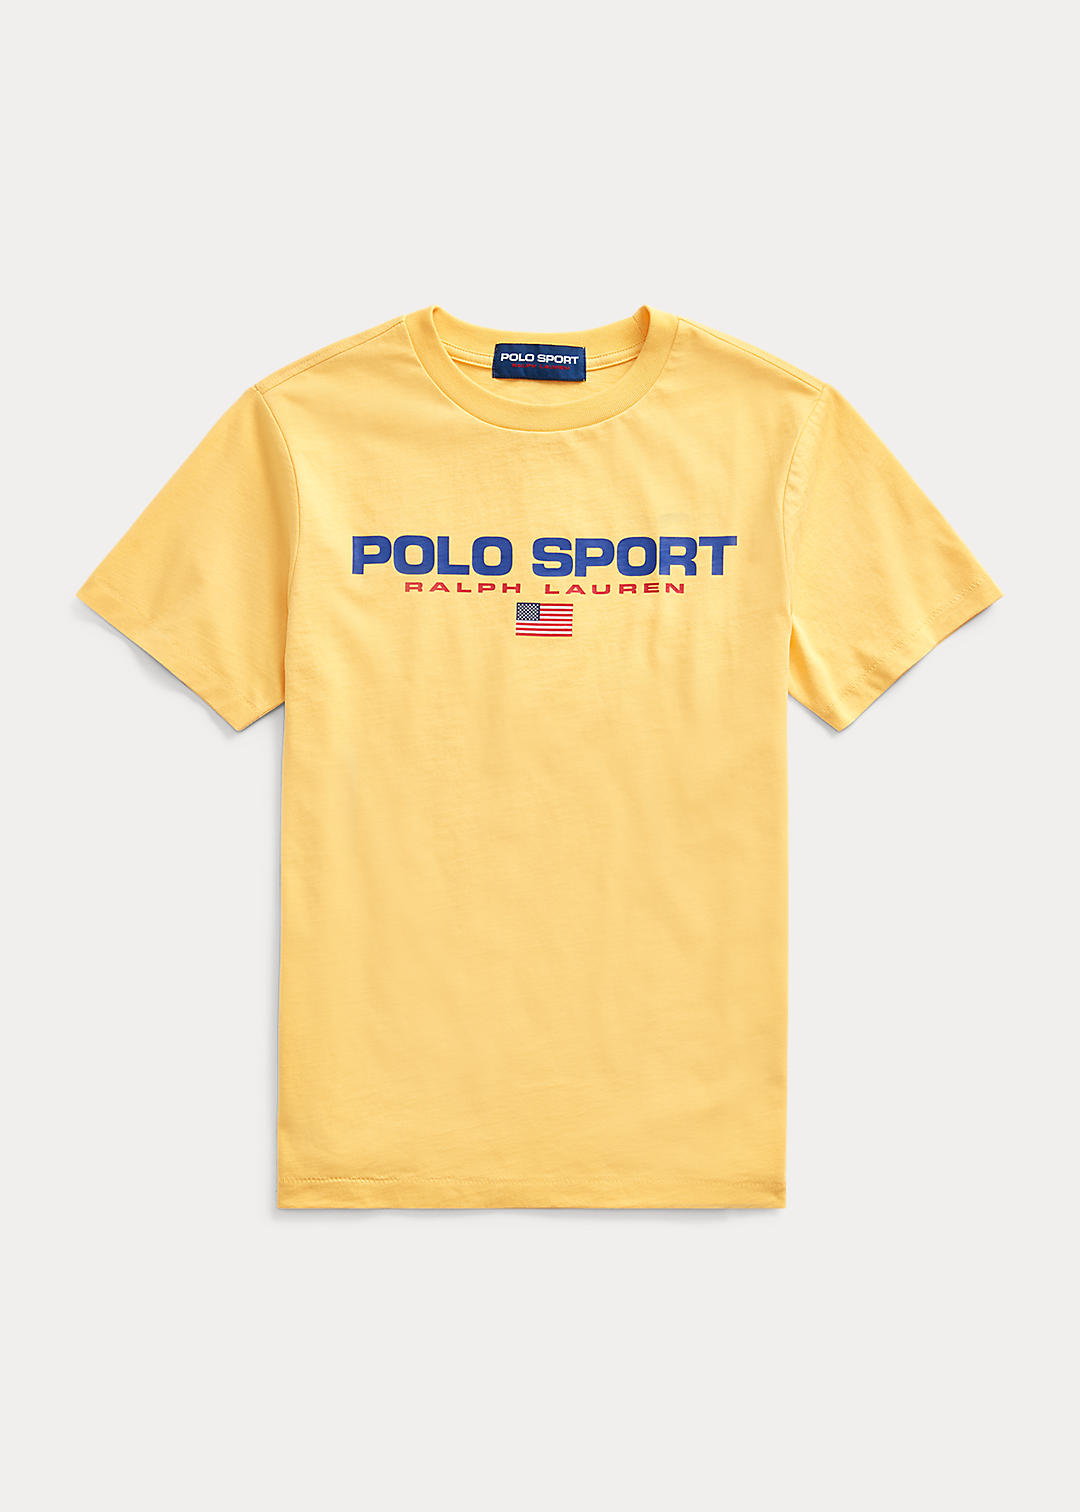 BOYS 6-14 YEARS T-shirt Polo Sport jersey de coton  1